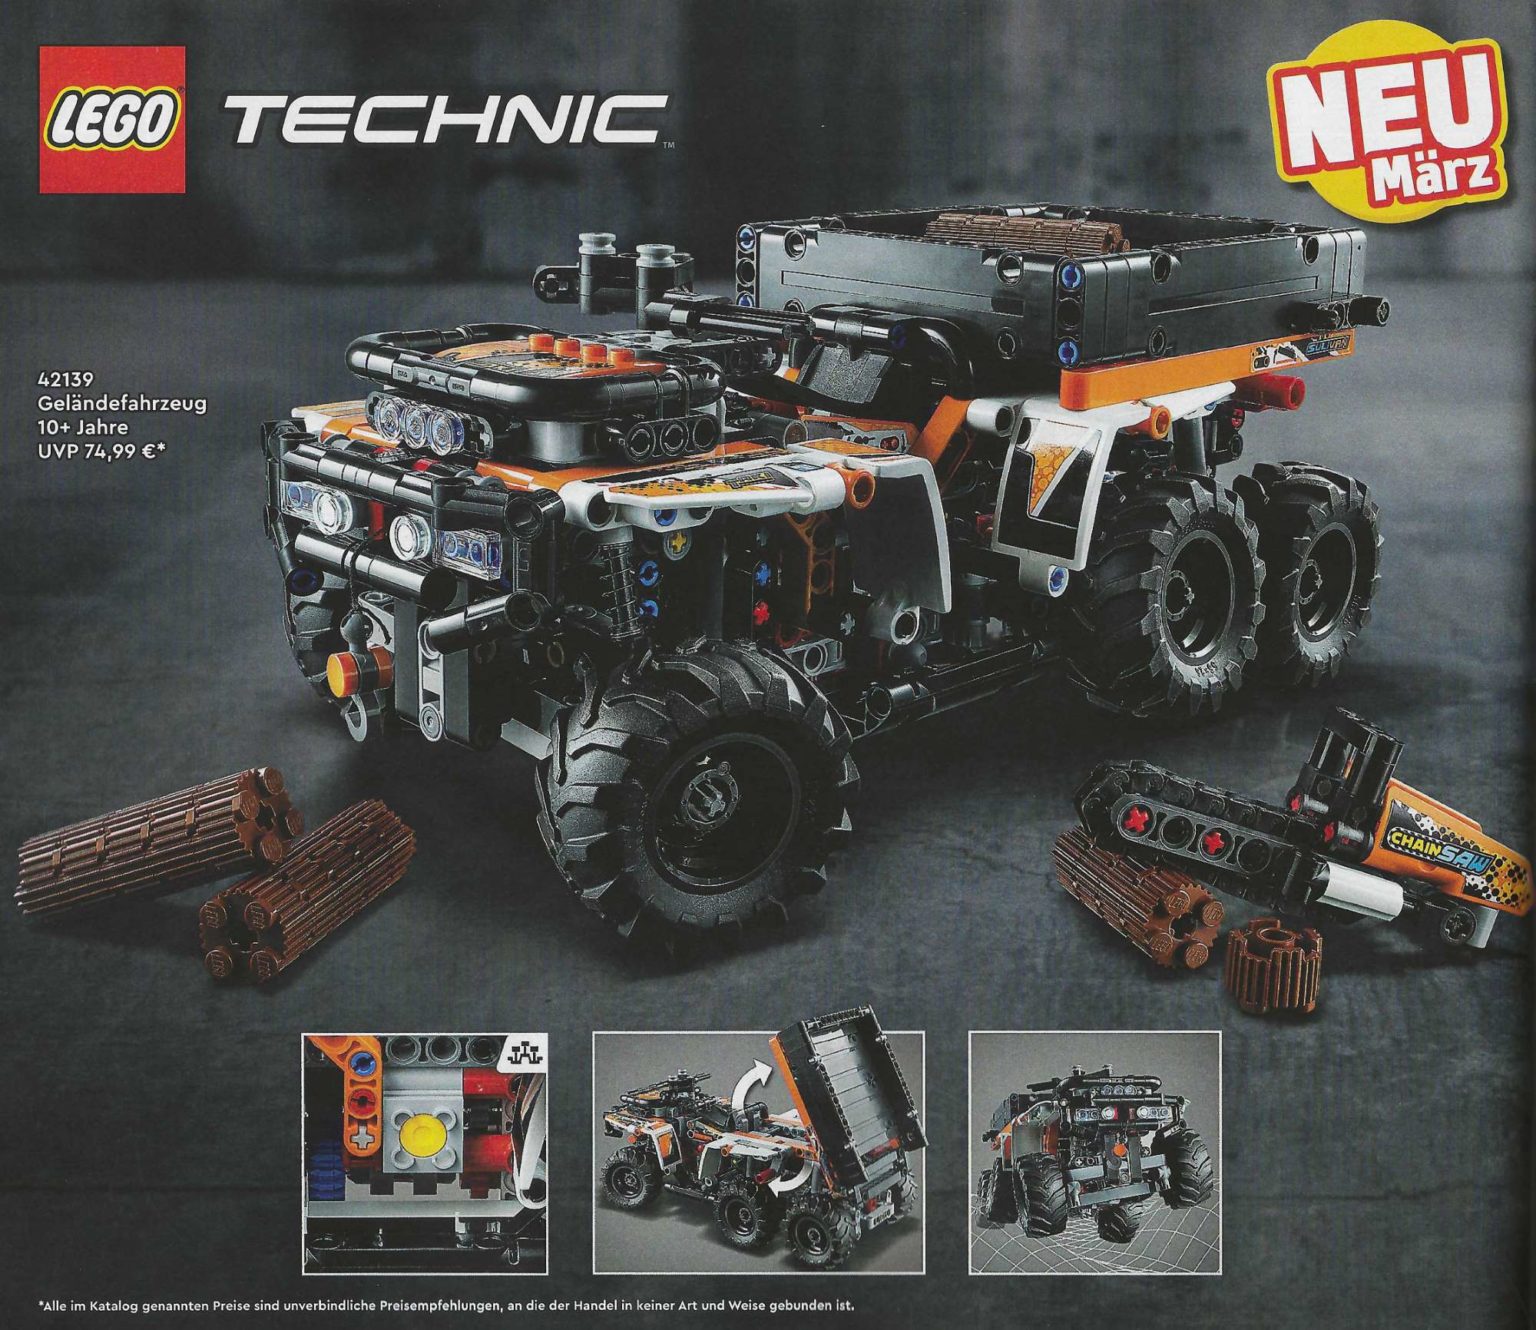 LEGO Technic John (42136) Brick 9620R Revealed Fan 4WD - The Deere Tractor